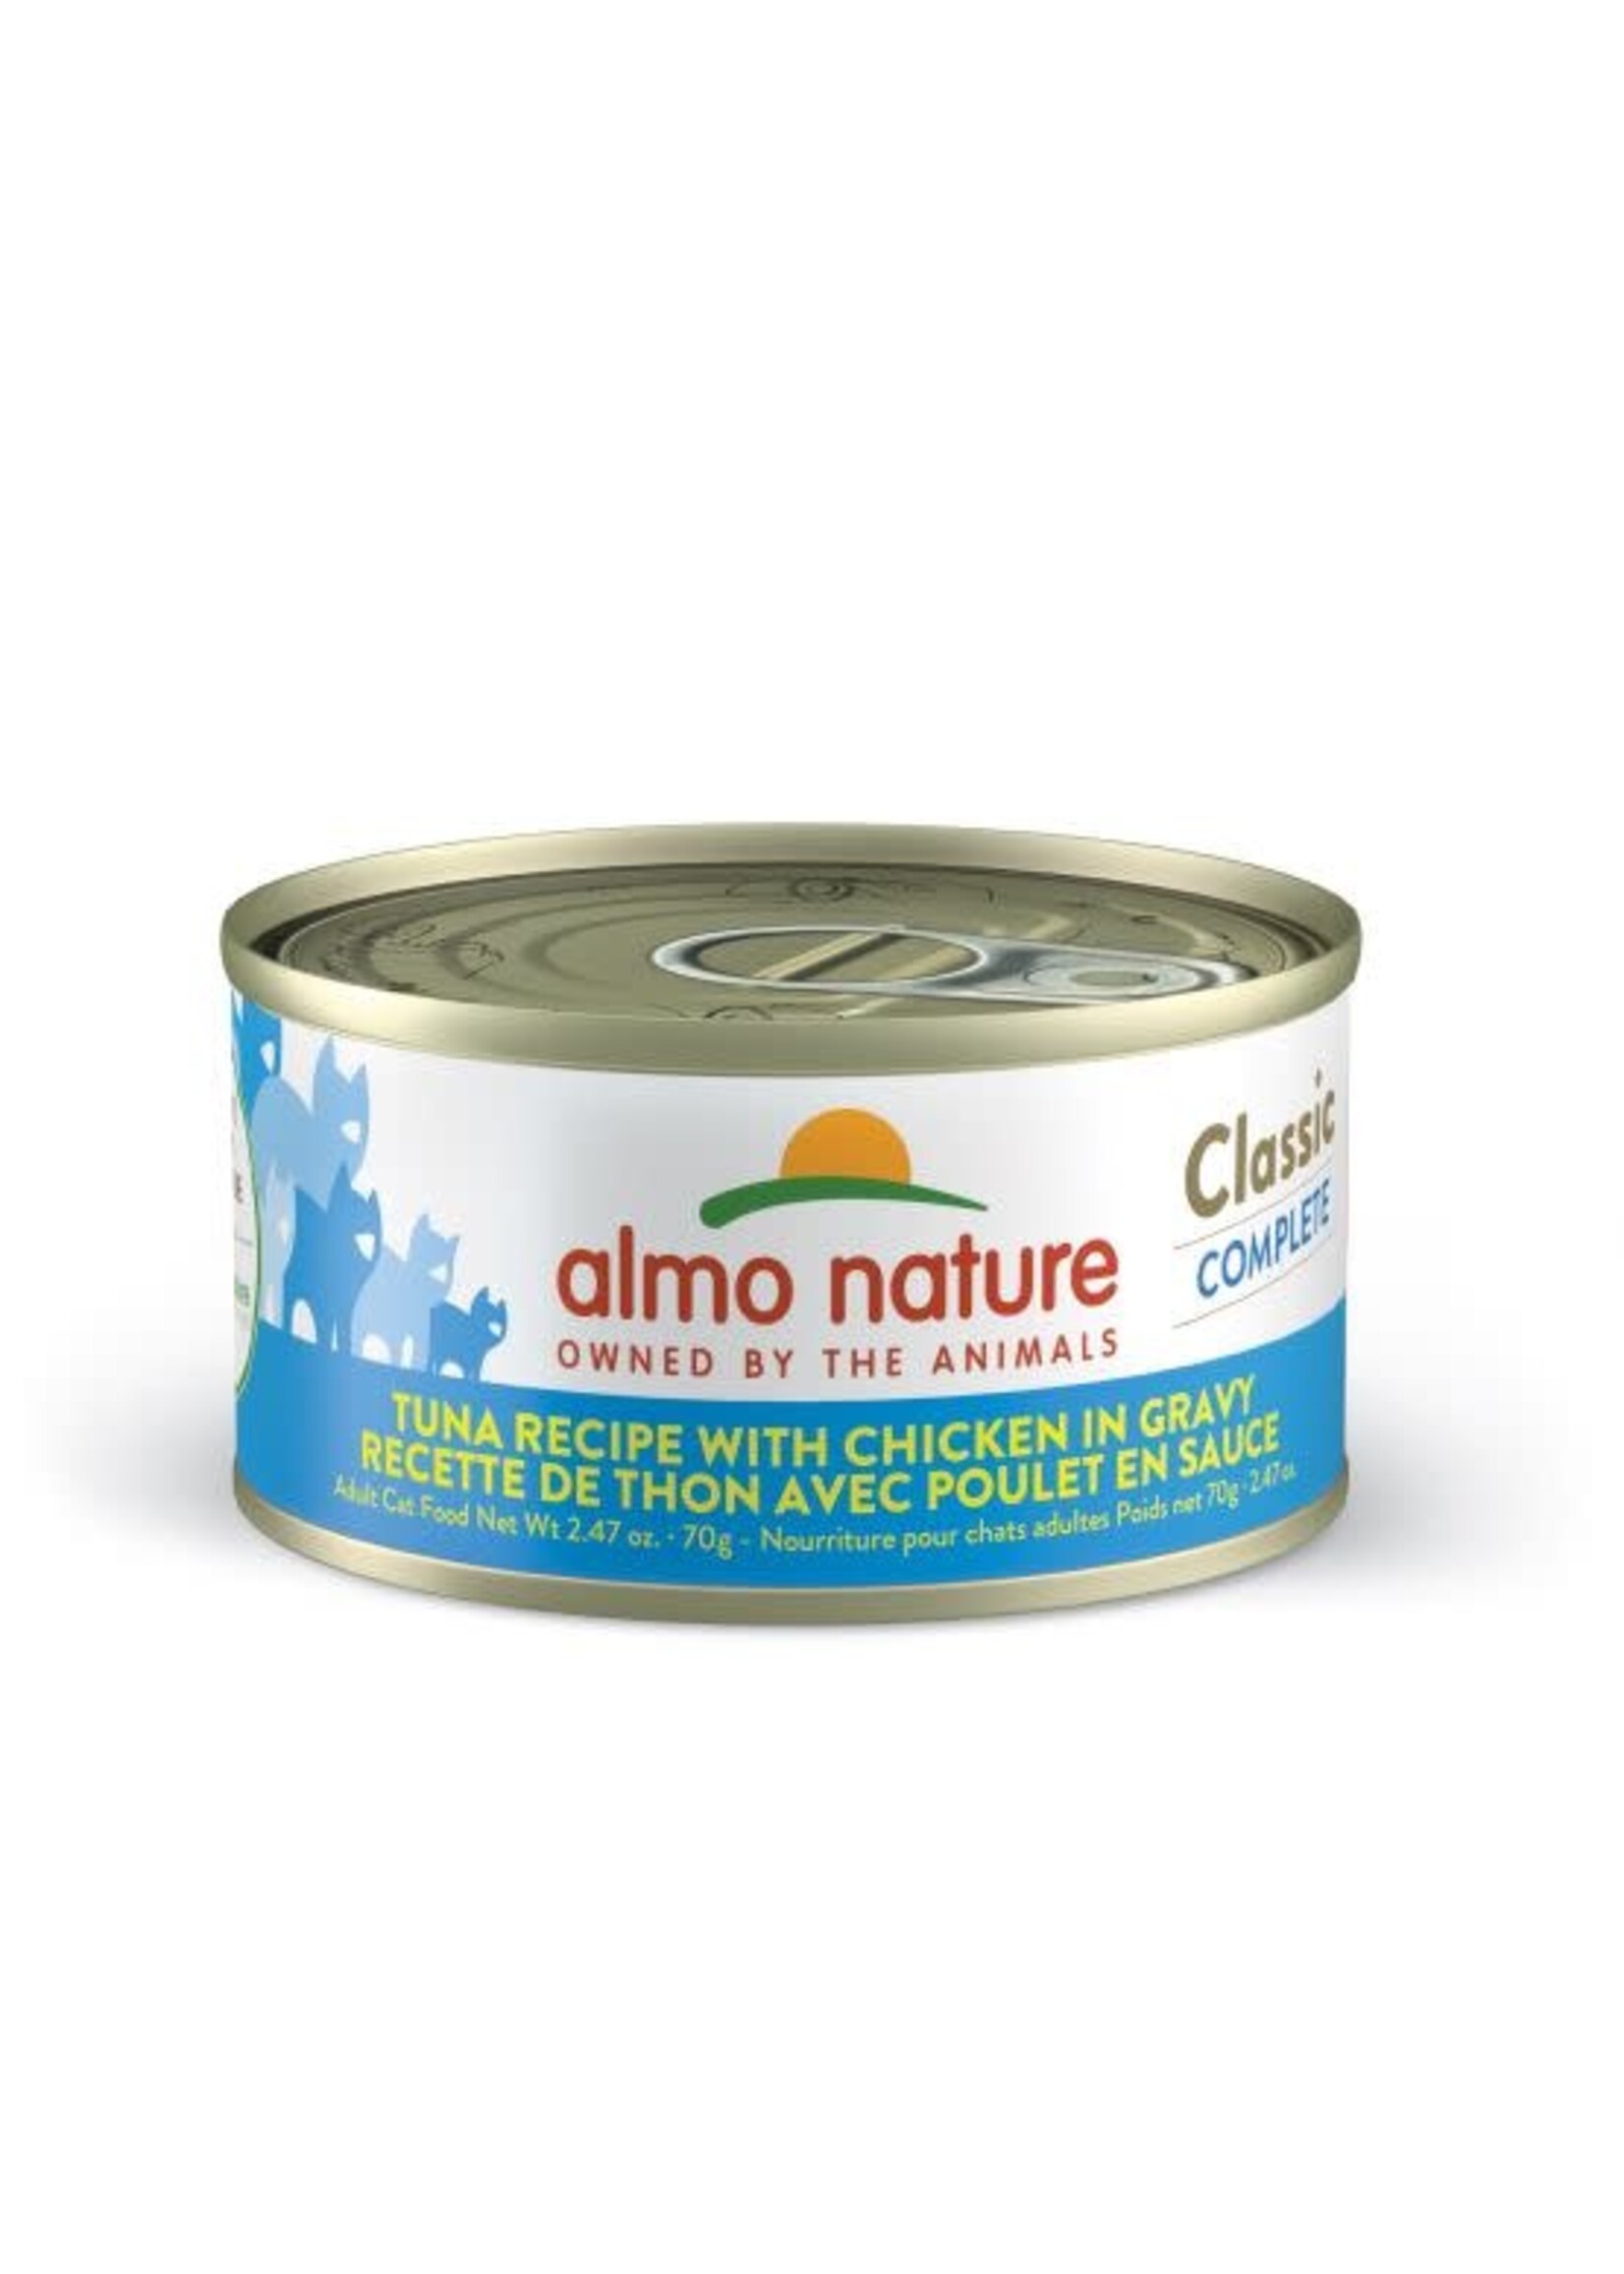 Almo Nature Almo Classic Complete Chat - Thon Avec Poulet En Sauce , 70 gr